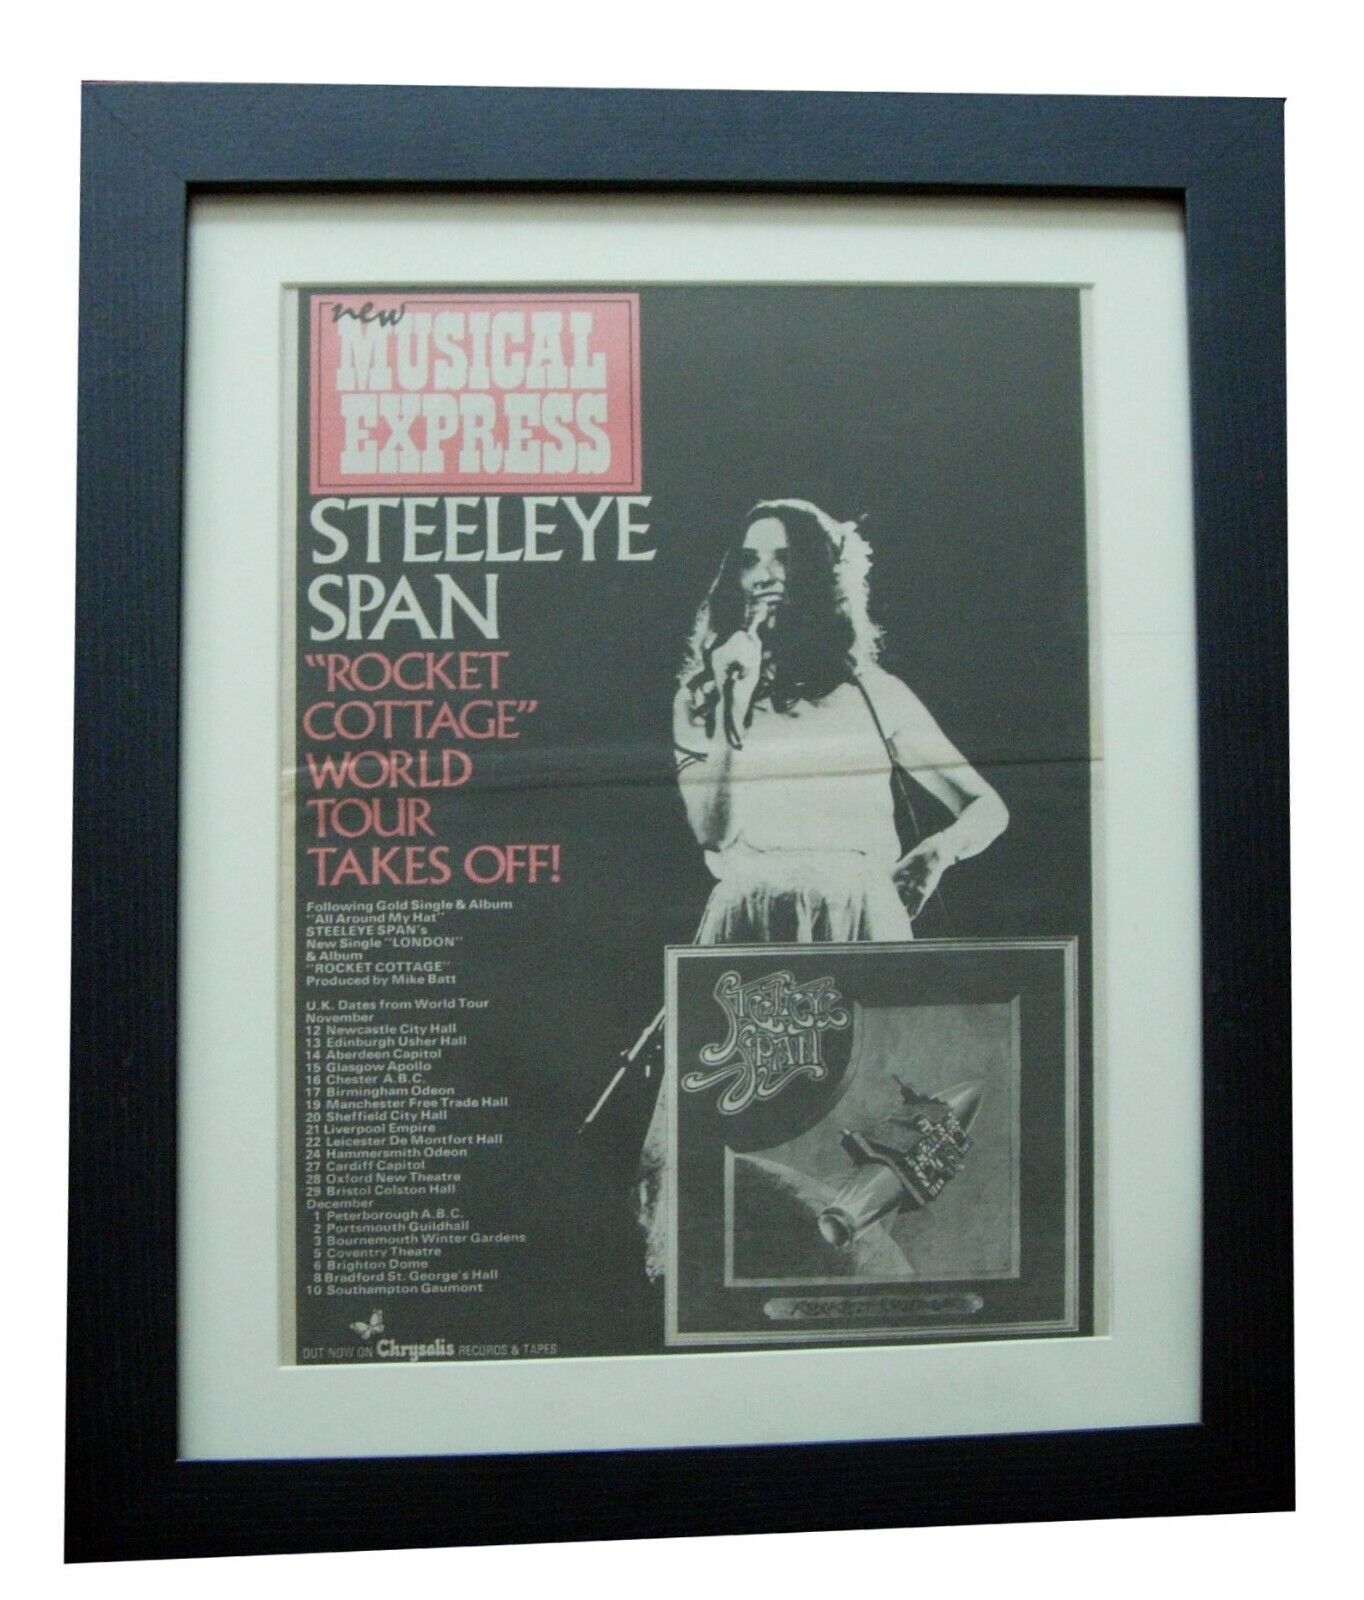 STEELEYE SPAN+Rocket Cottage+TOUR+POSTER+AD+FRAMED+ORIGINAL 1976+FAST WORLD SHIP nieuwe prijs